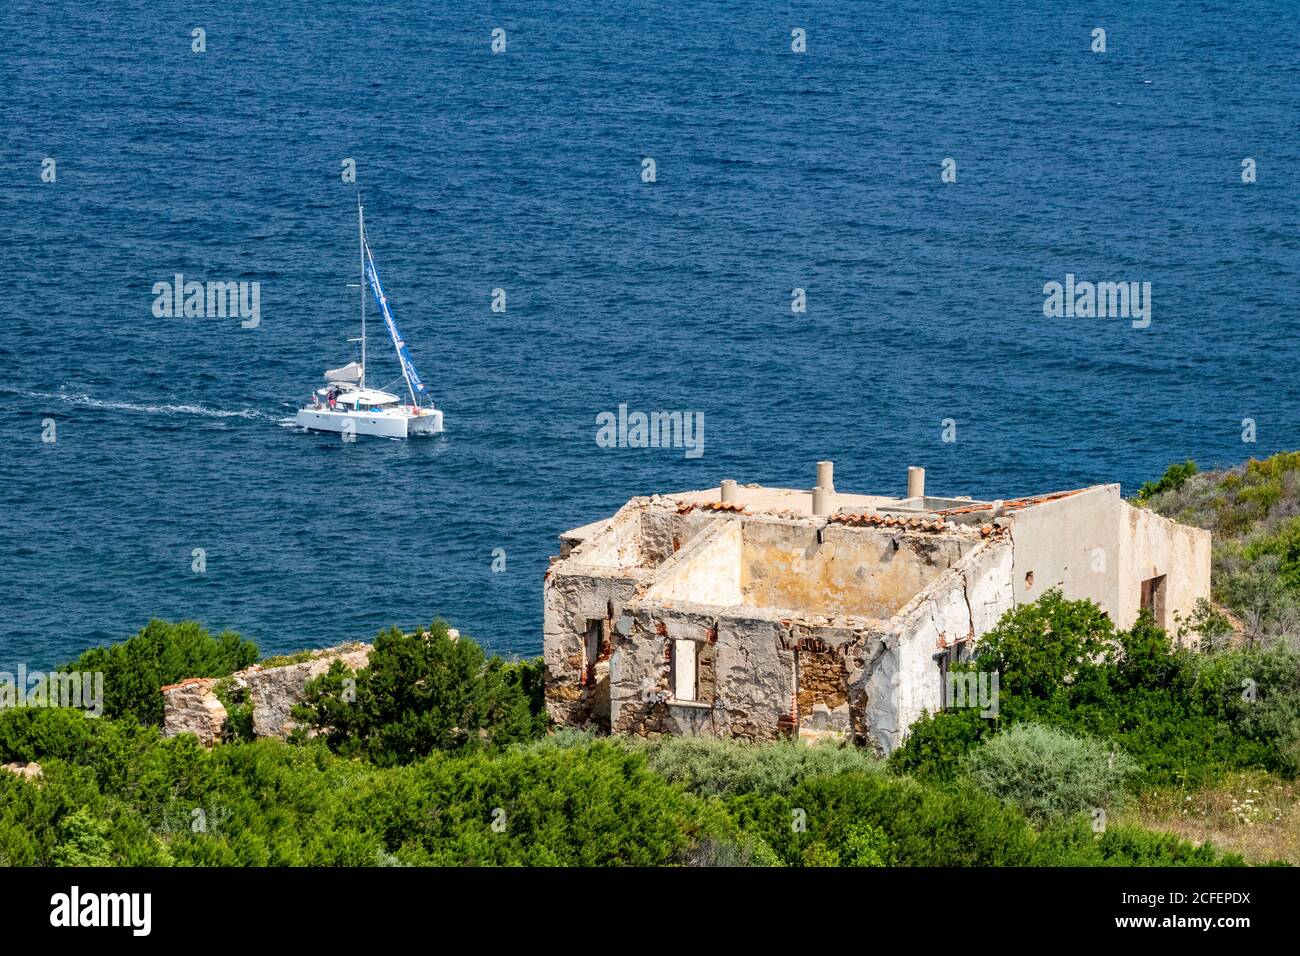 Bunte Blick auf die Küste von Nord-Sardinien mit Katamaran und Ruine von Batteria Battistoni– Baia Sardinia, Costa Smerelda, Sardinien, Italien. Stockfoto